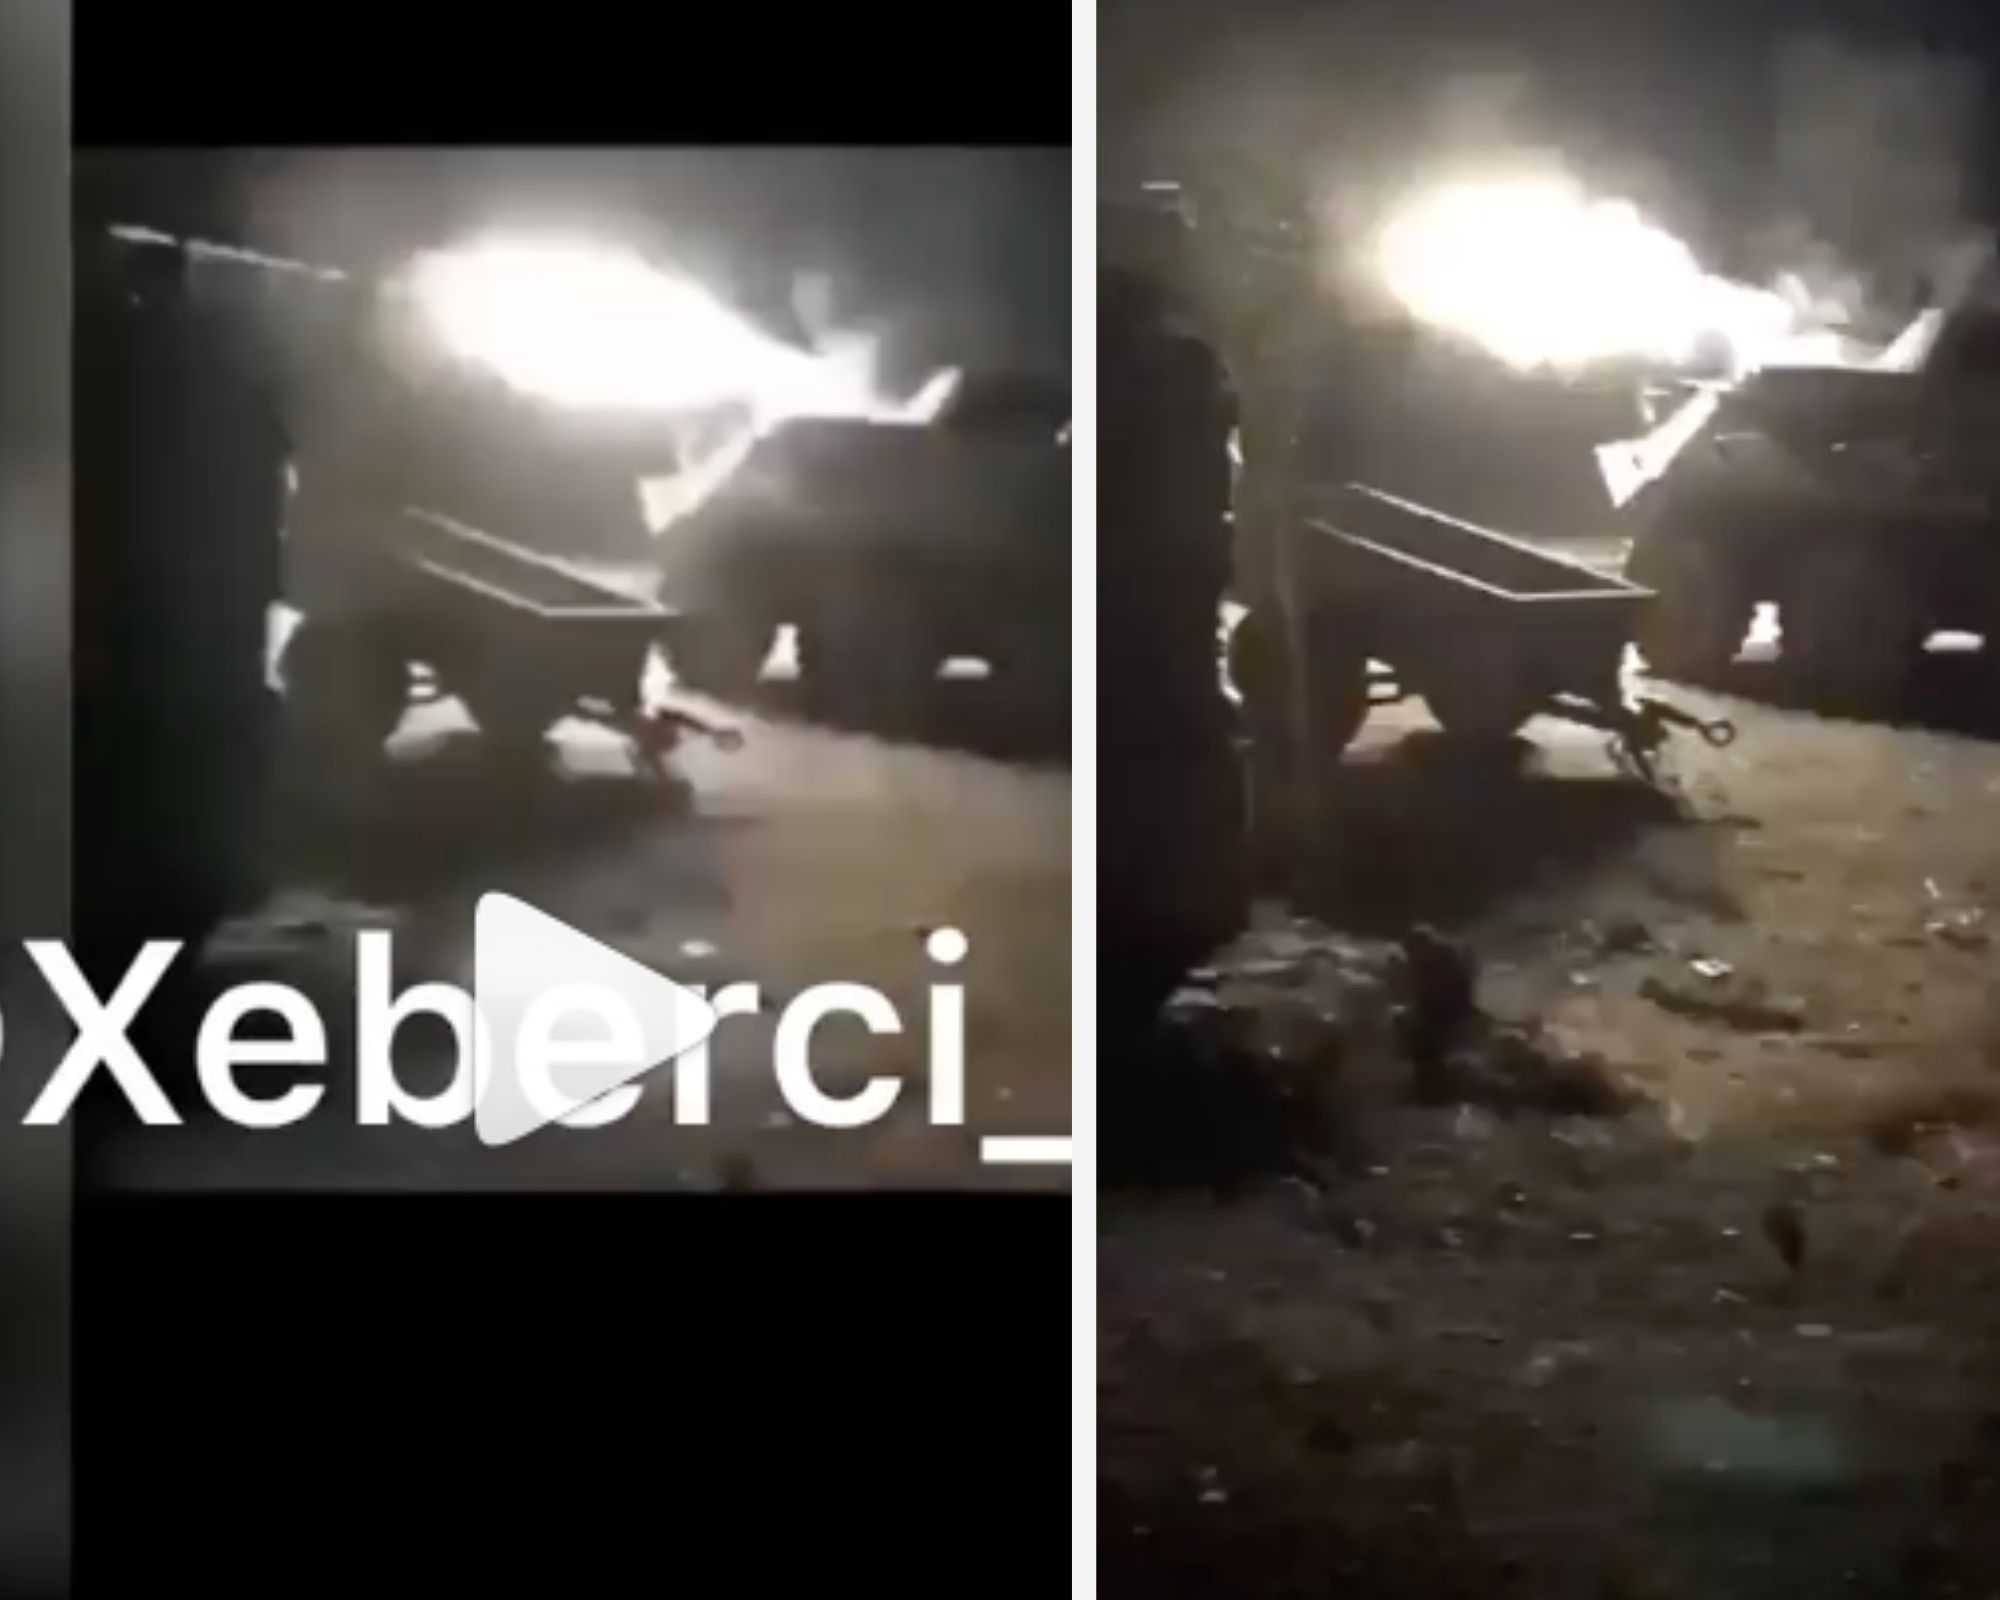 Videonun Tovuz istiqamətindəki döyüşlərdən olduğu iddiası